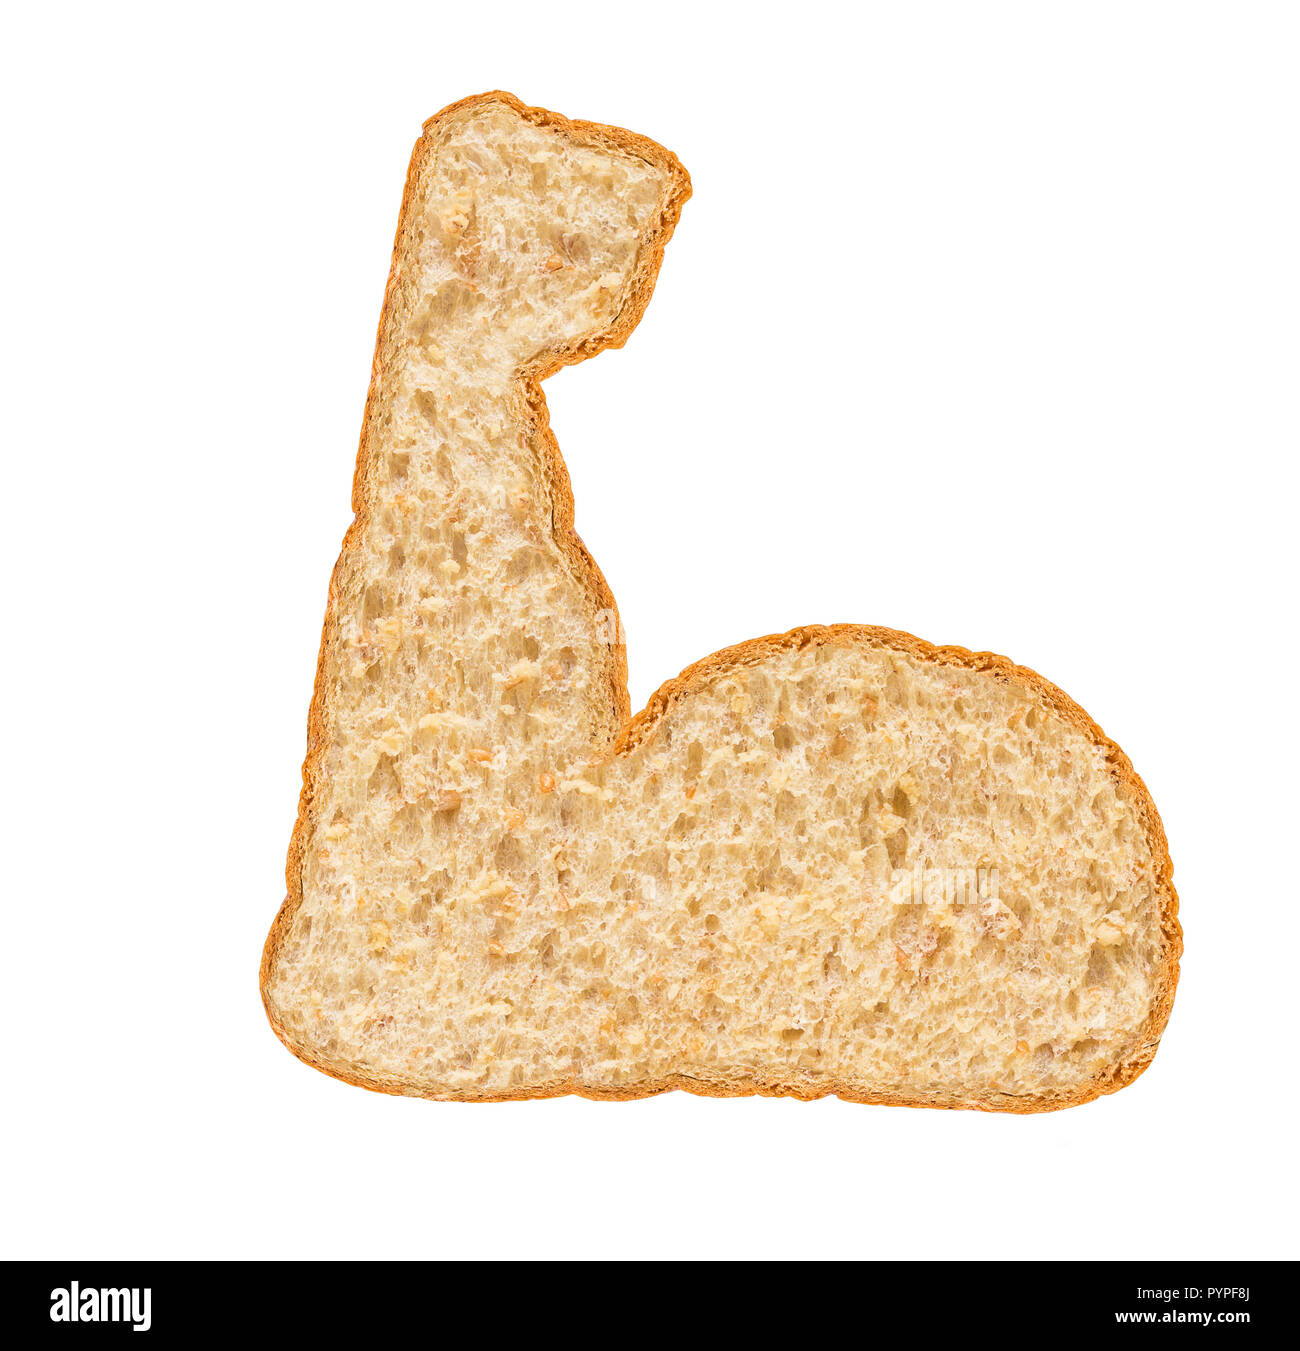 El pan de trigo entero icono fuerte sobre fondo blanco, la dieta y el fuerte concepto Foto de stock